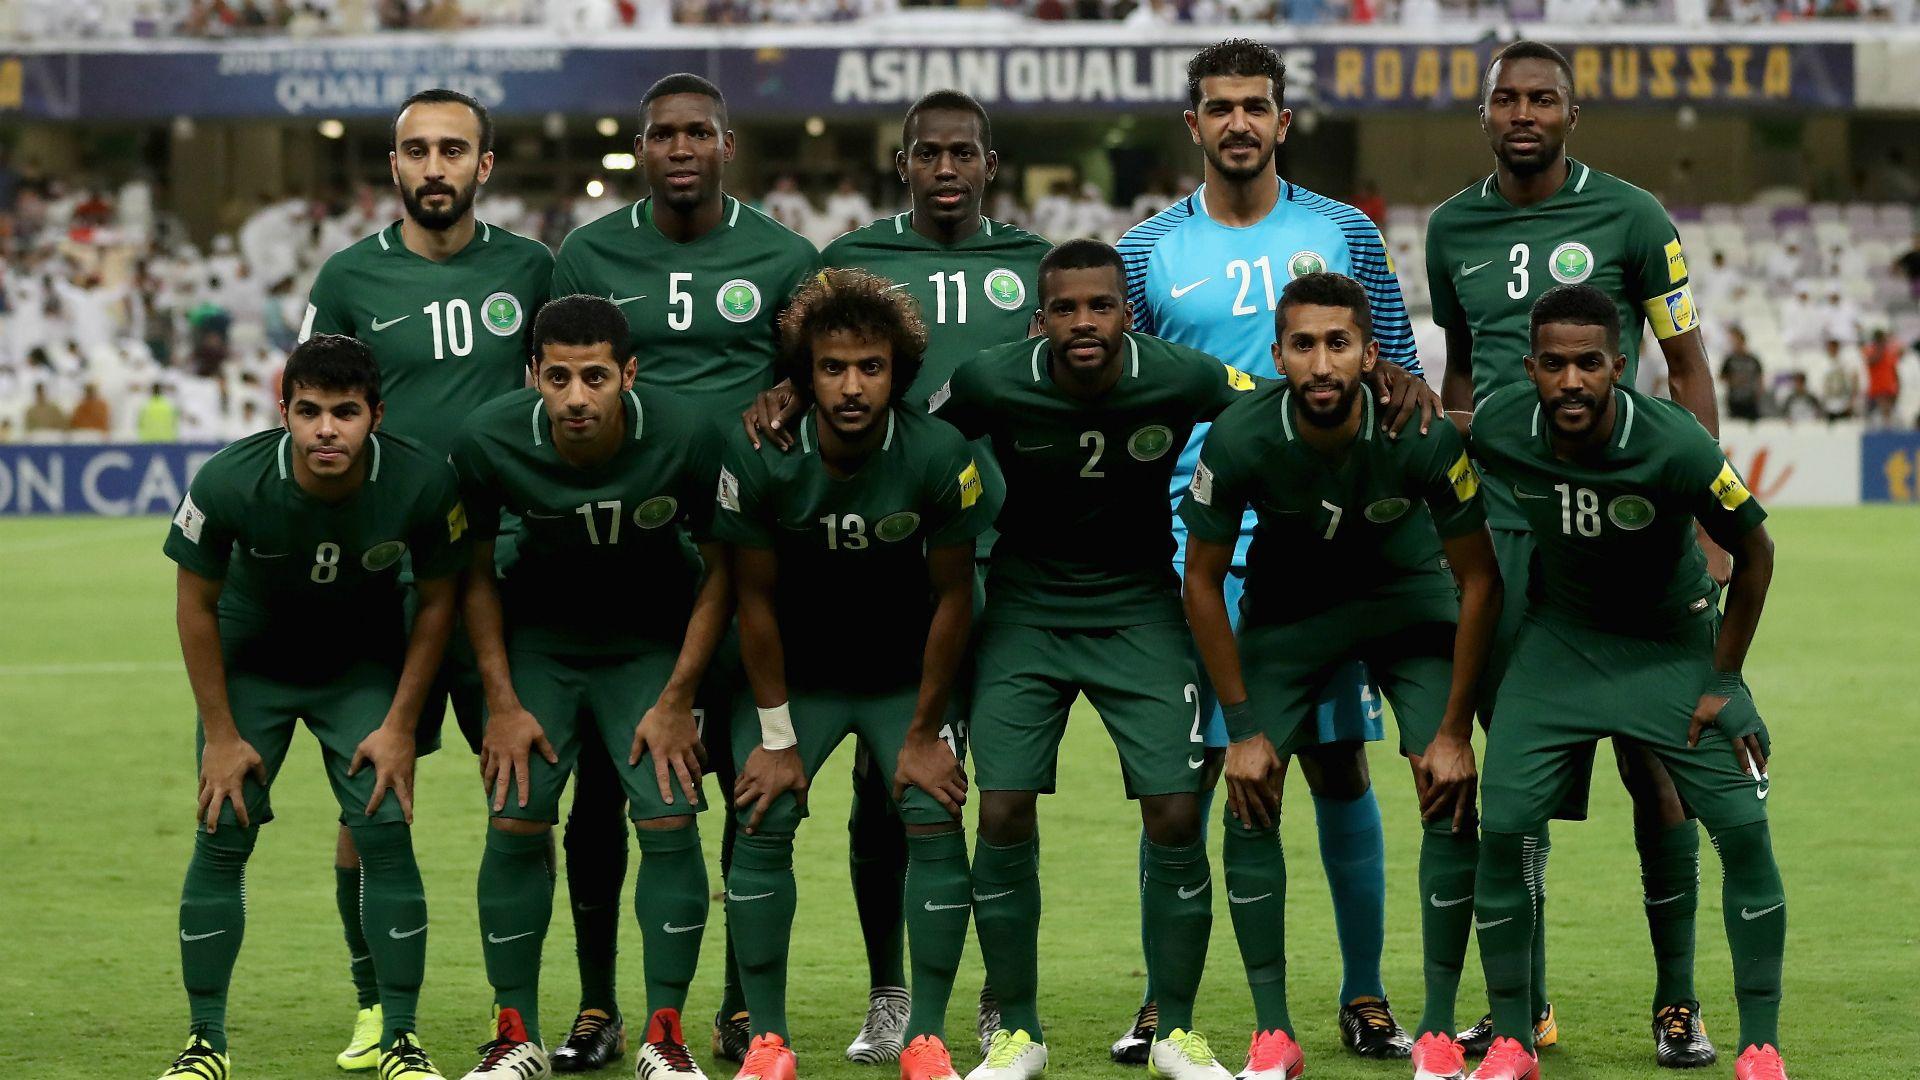 Saudi Arabia National Football Team Wallpapers Wallpaper Cave